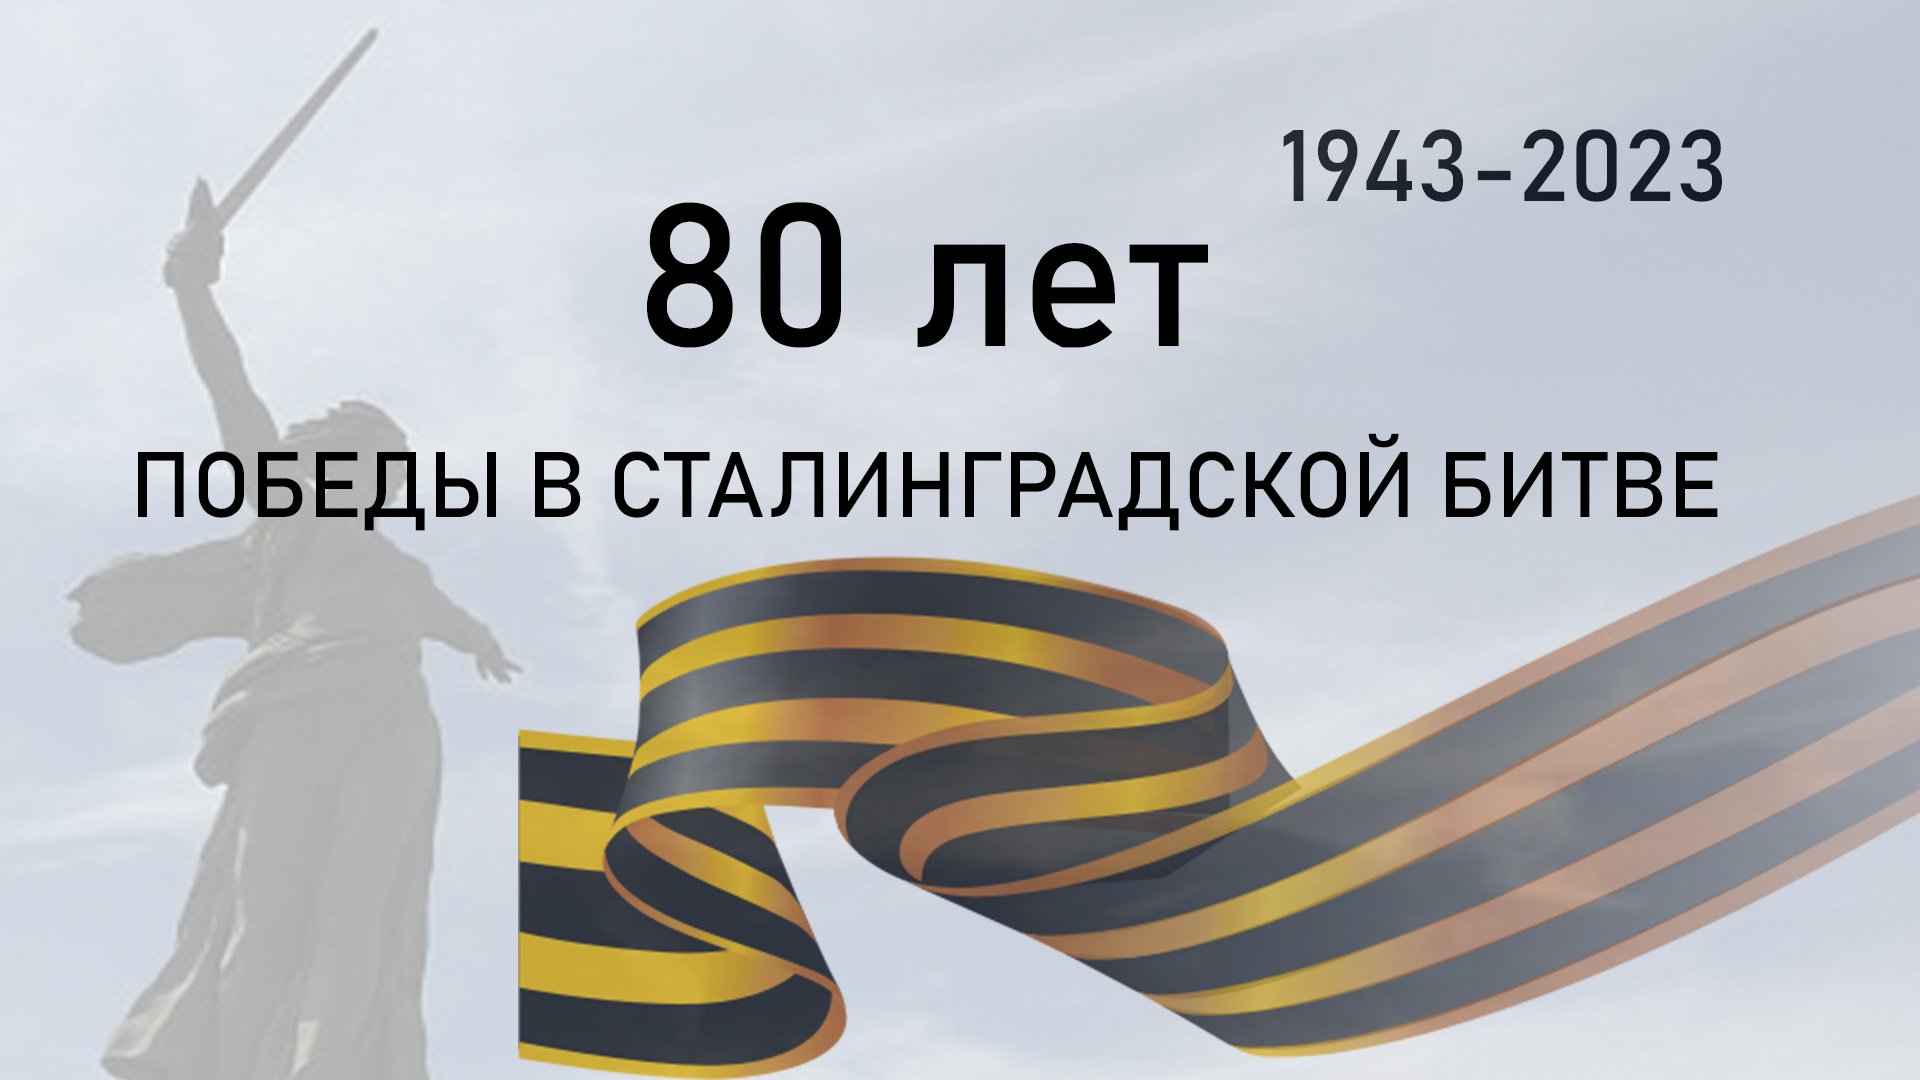 80 лет победы в Сталинградской битве.